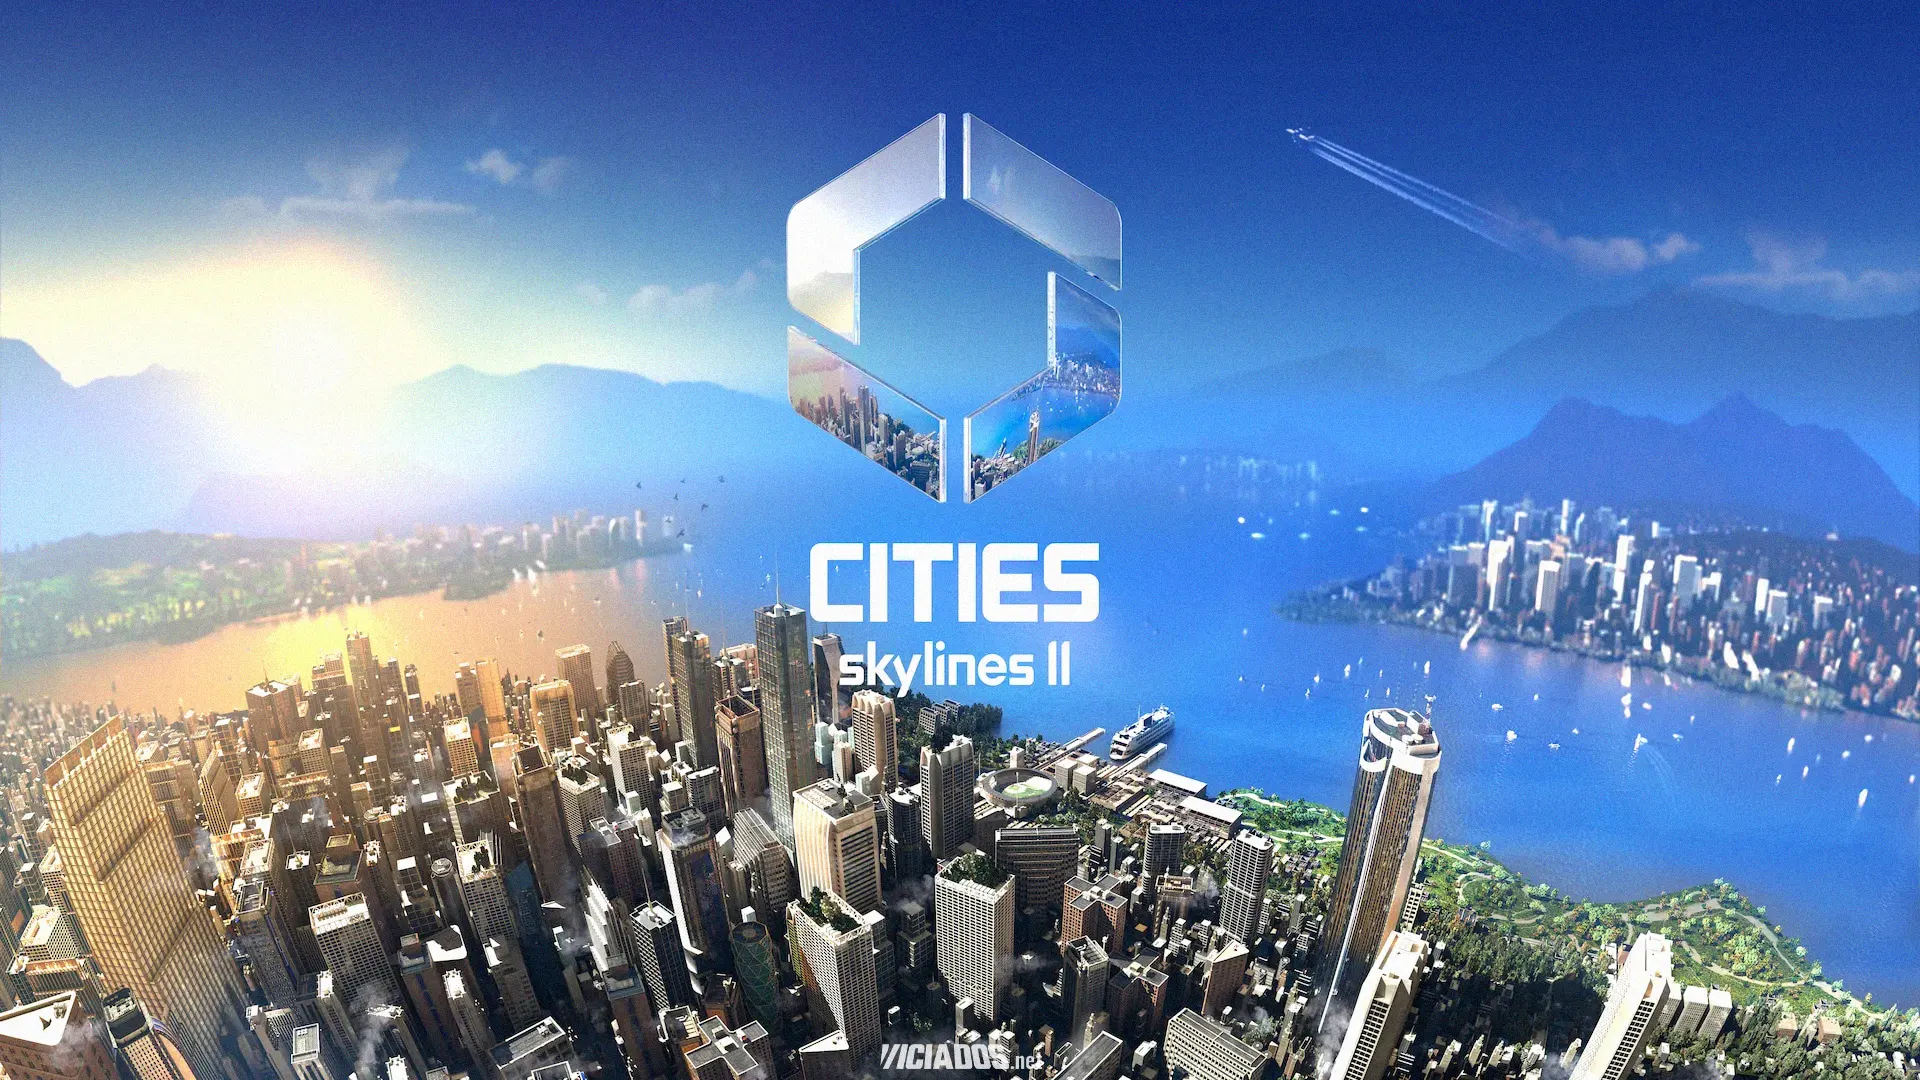 Cities Skylines 2 | Microsoft vaza acidentalmente imagens de gameplay na Xbox Store 2023 Viciados